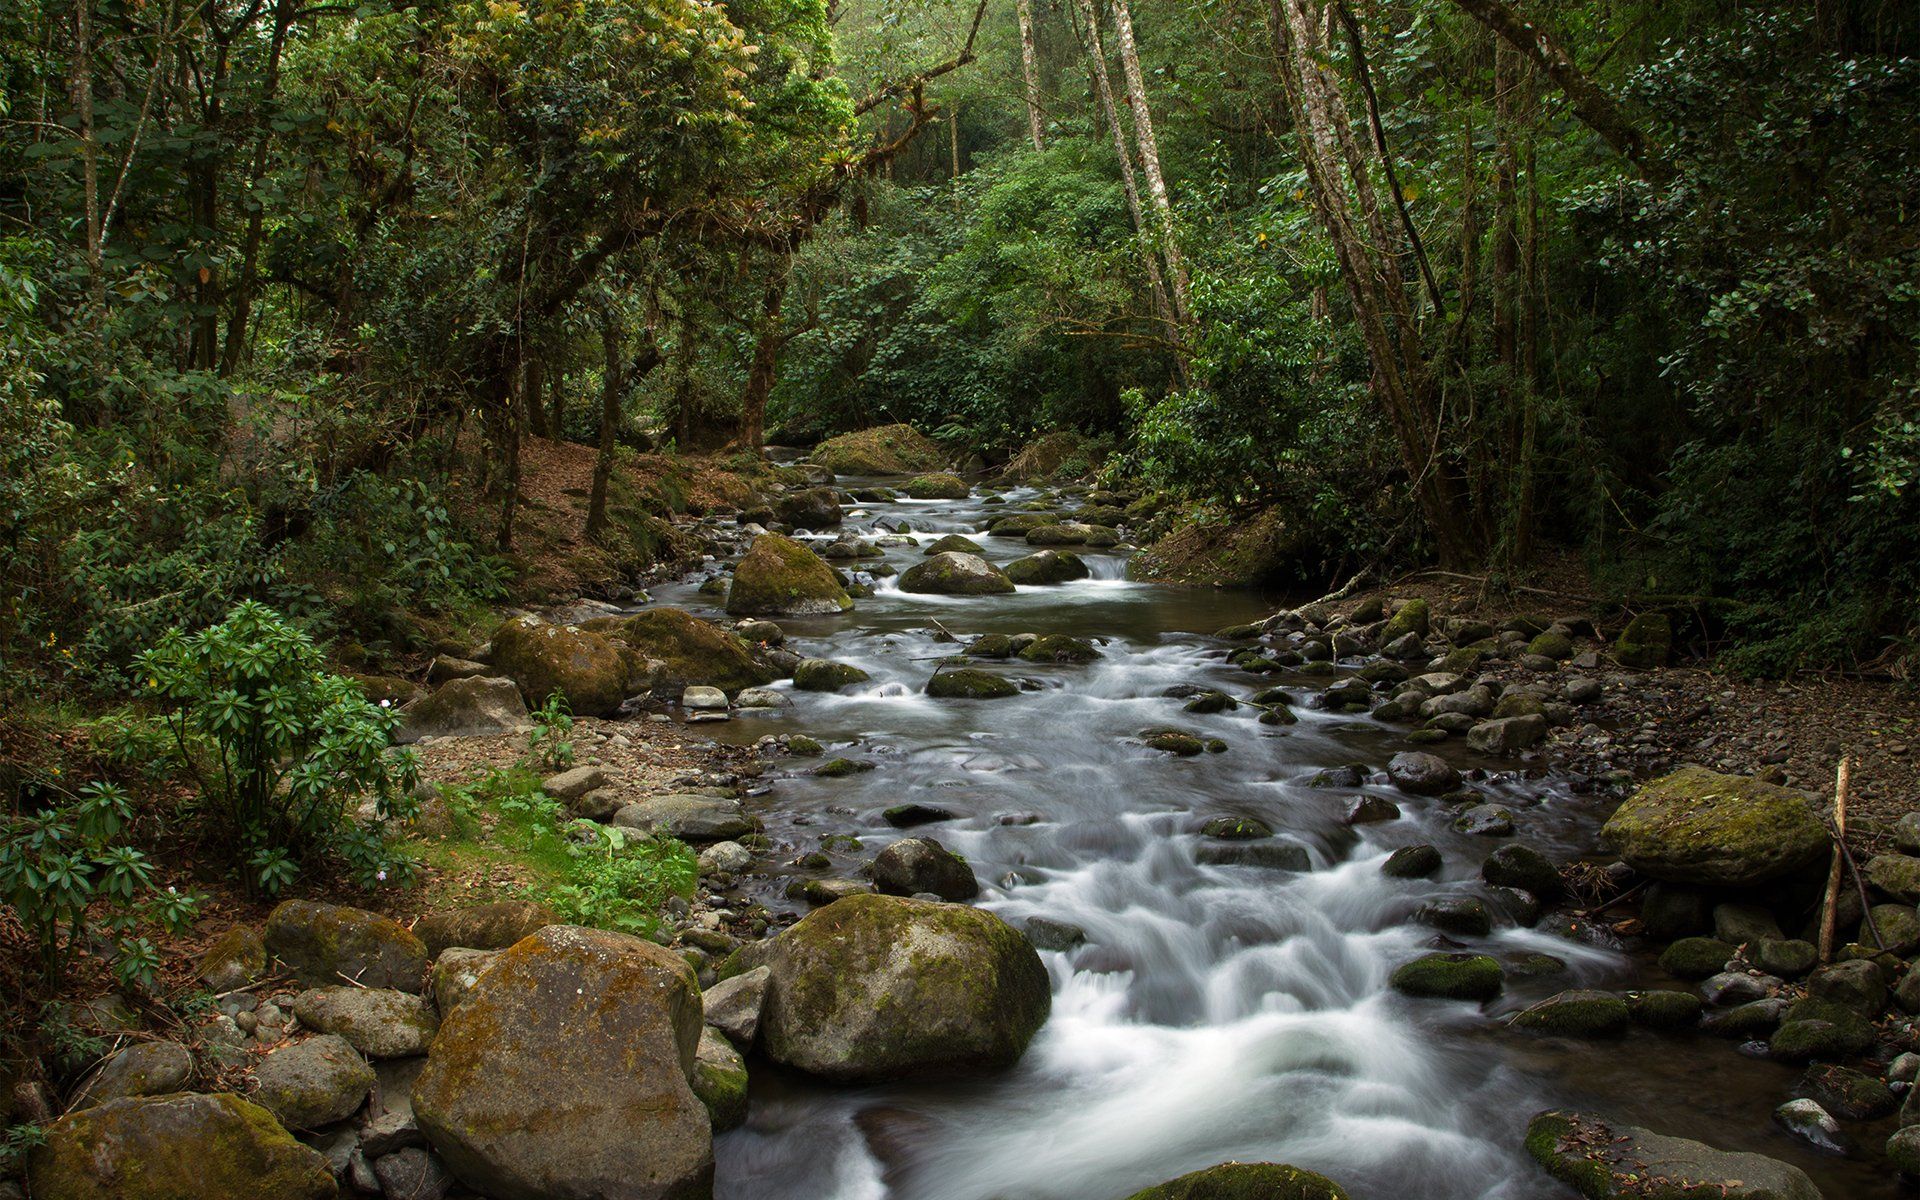 تصویر انرژی بخش رودخانه سنگی در جنگل خوش آب و هوا 